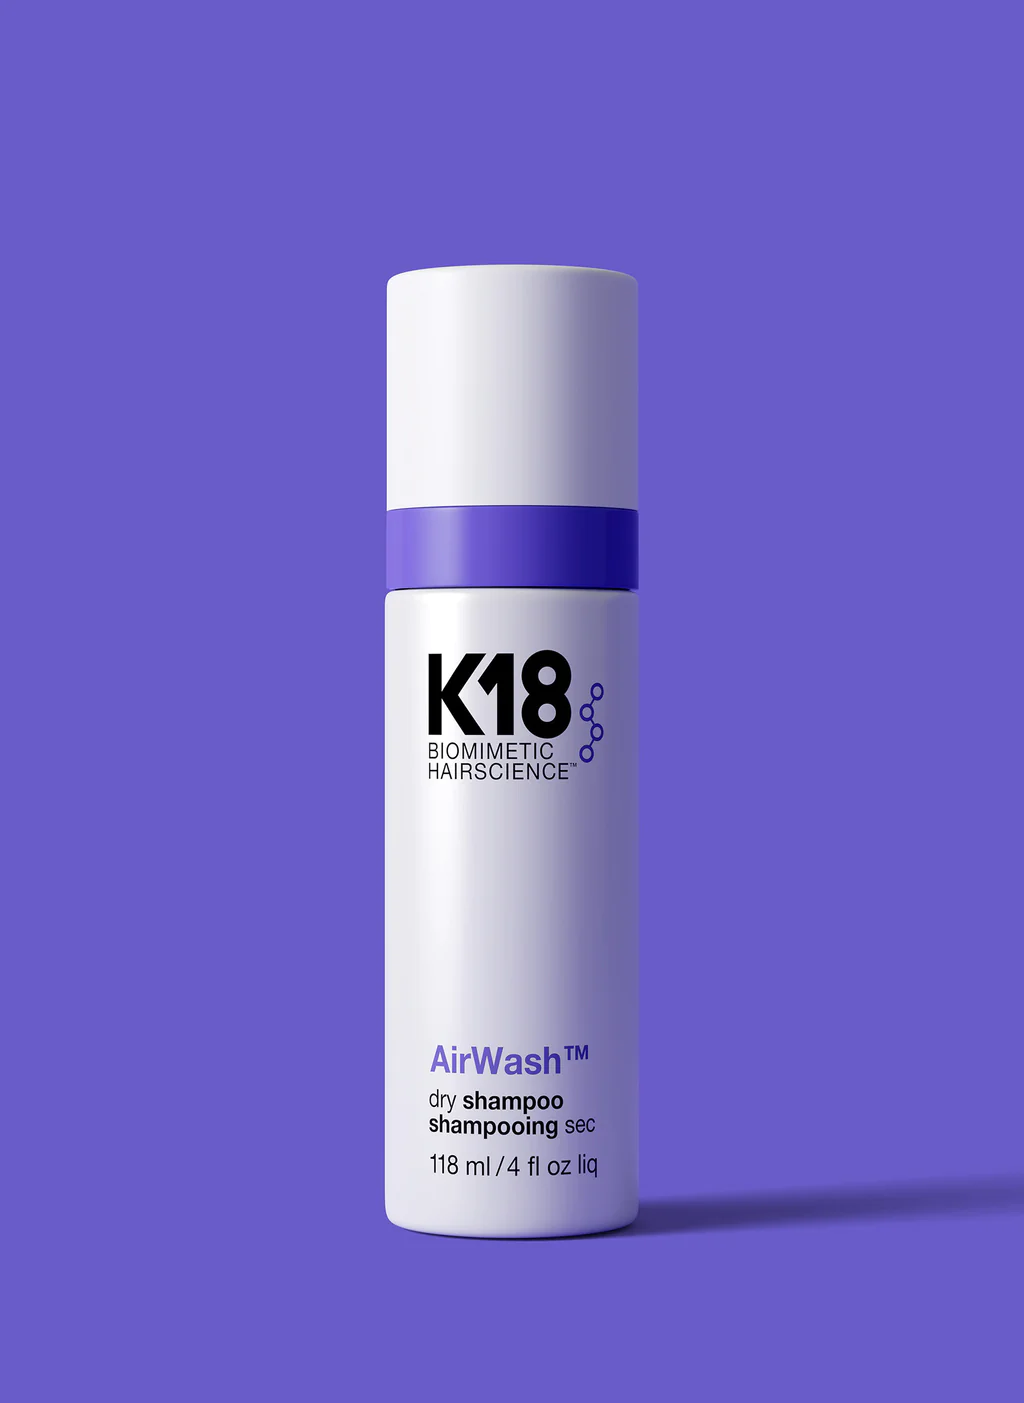 K18 AirWash dry shampoo